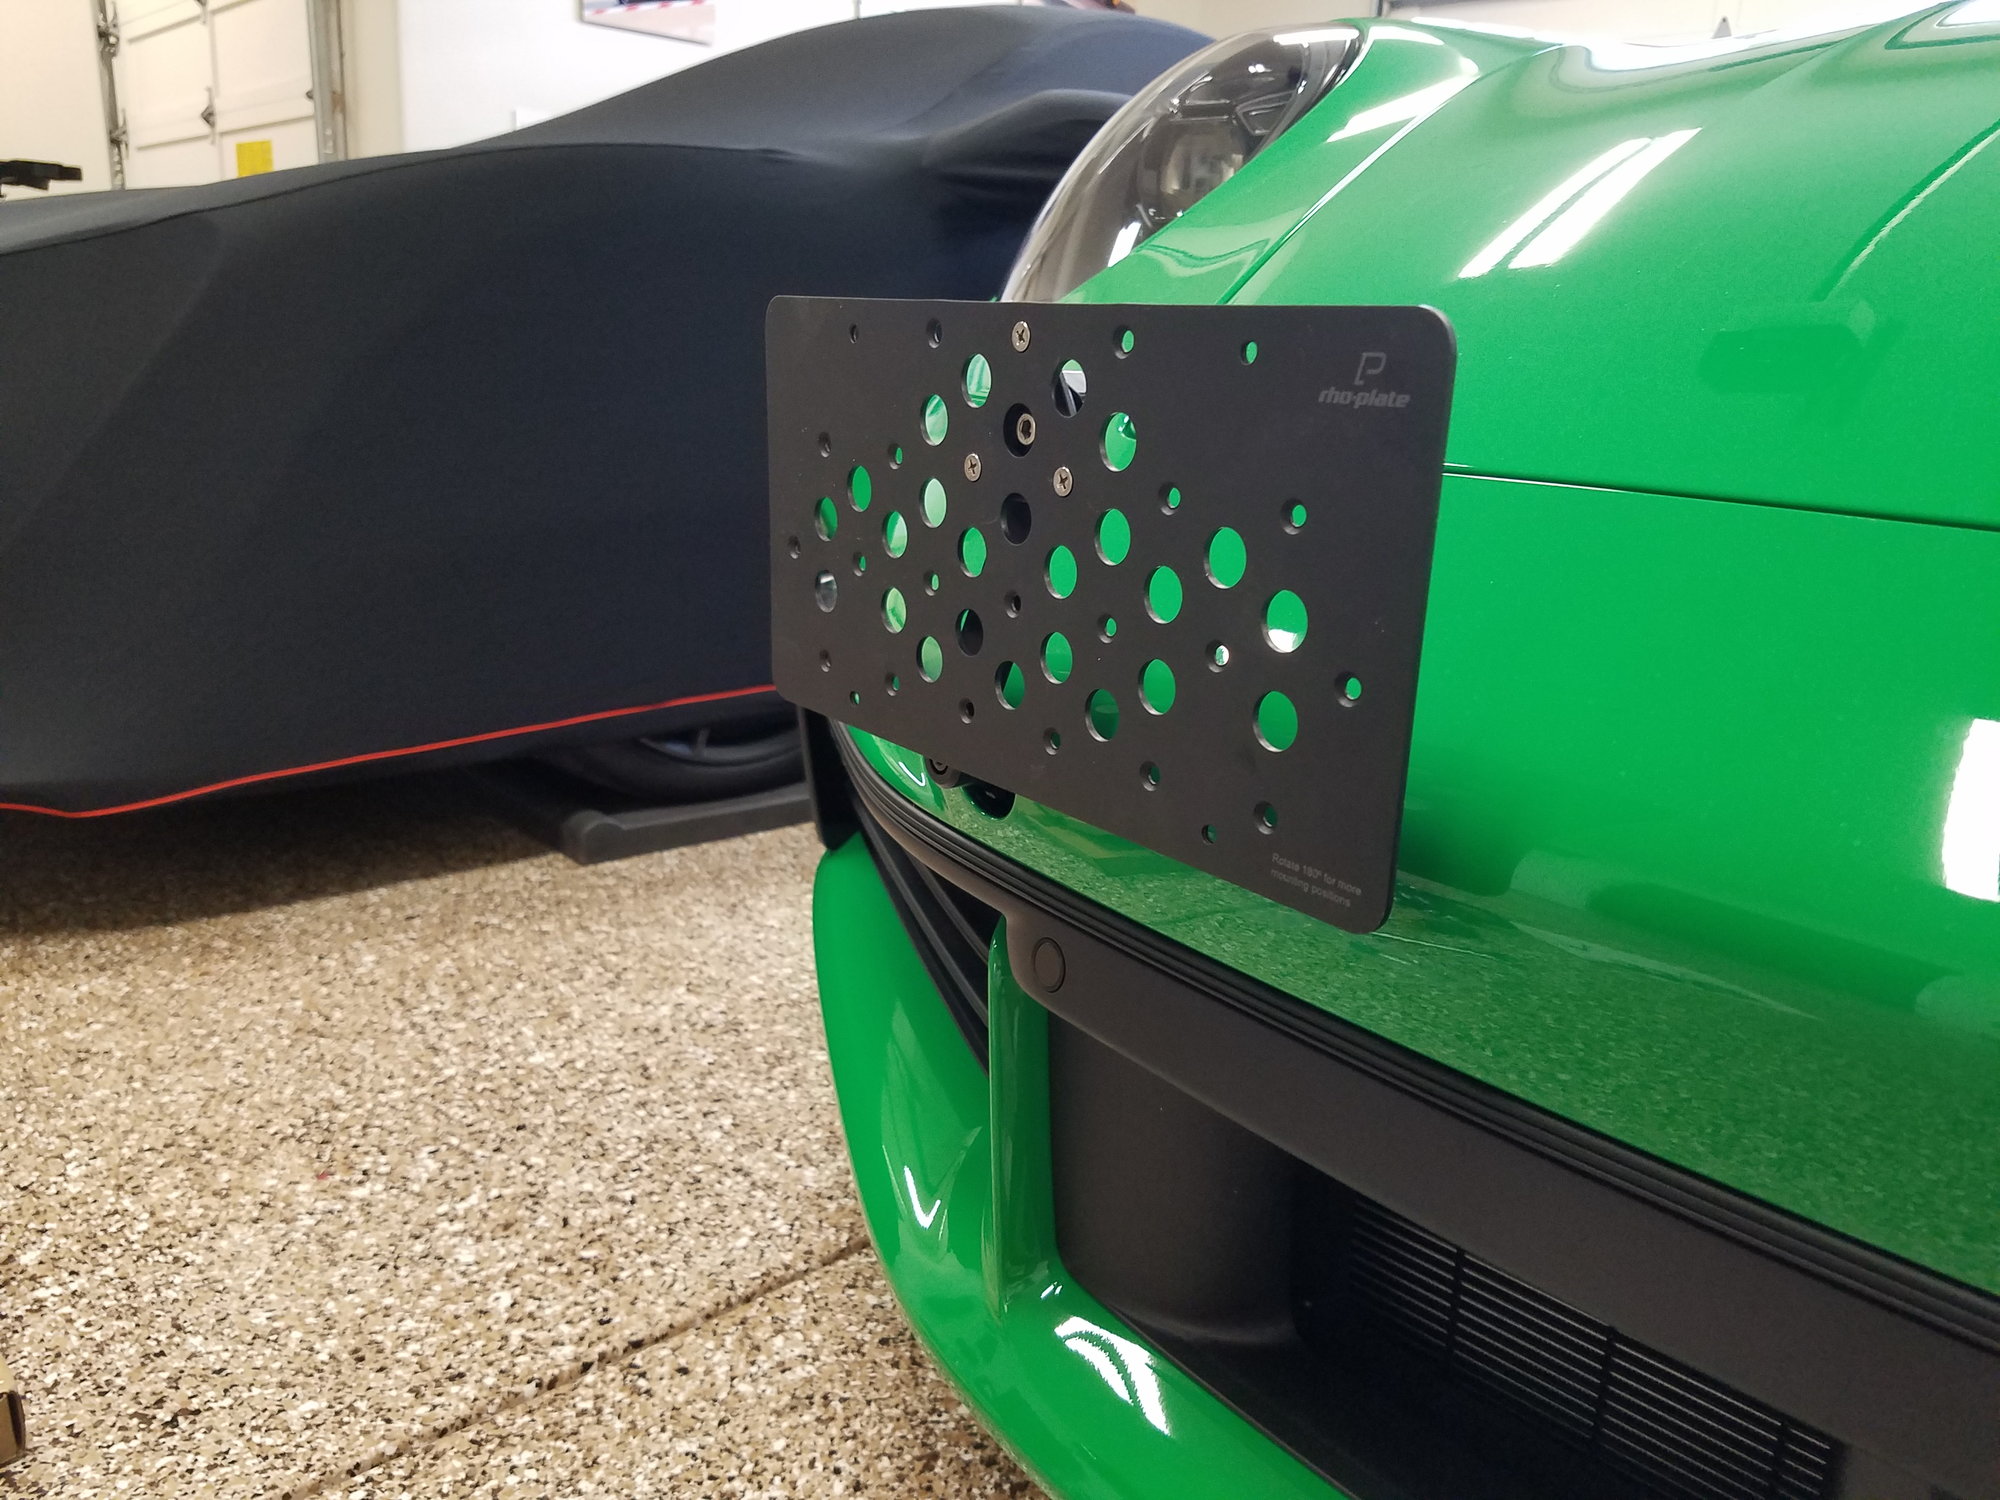 Tow hook front license plate bracket - Rennlist - Porsche Discussion Forums